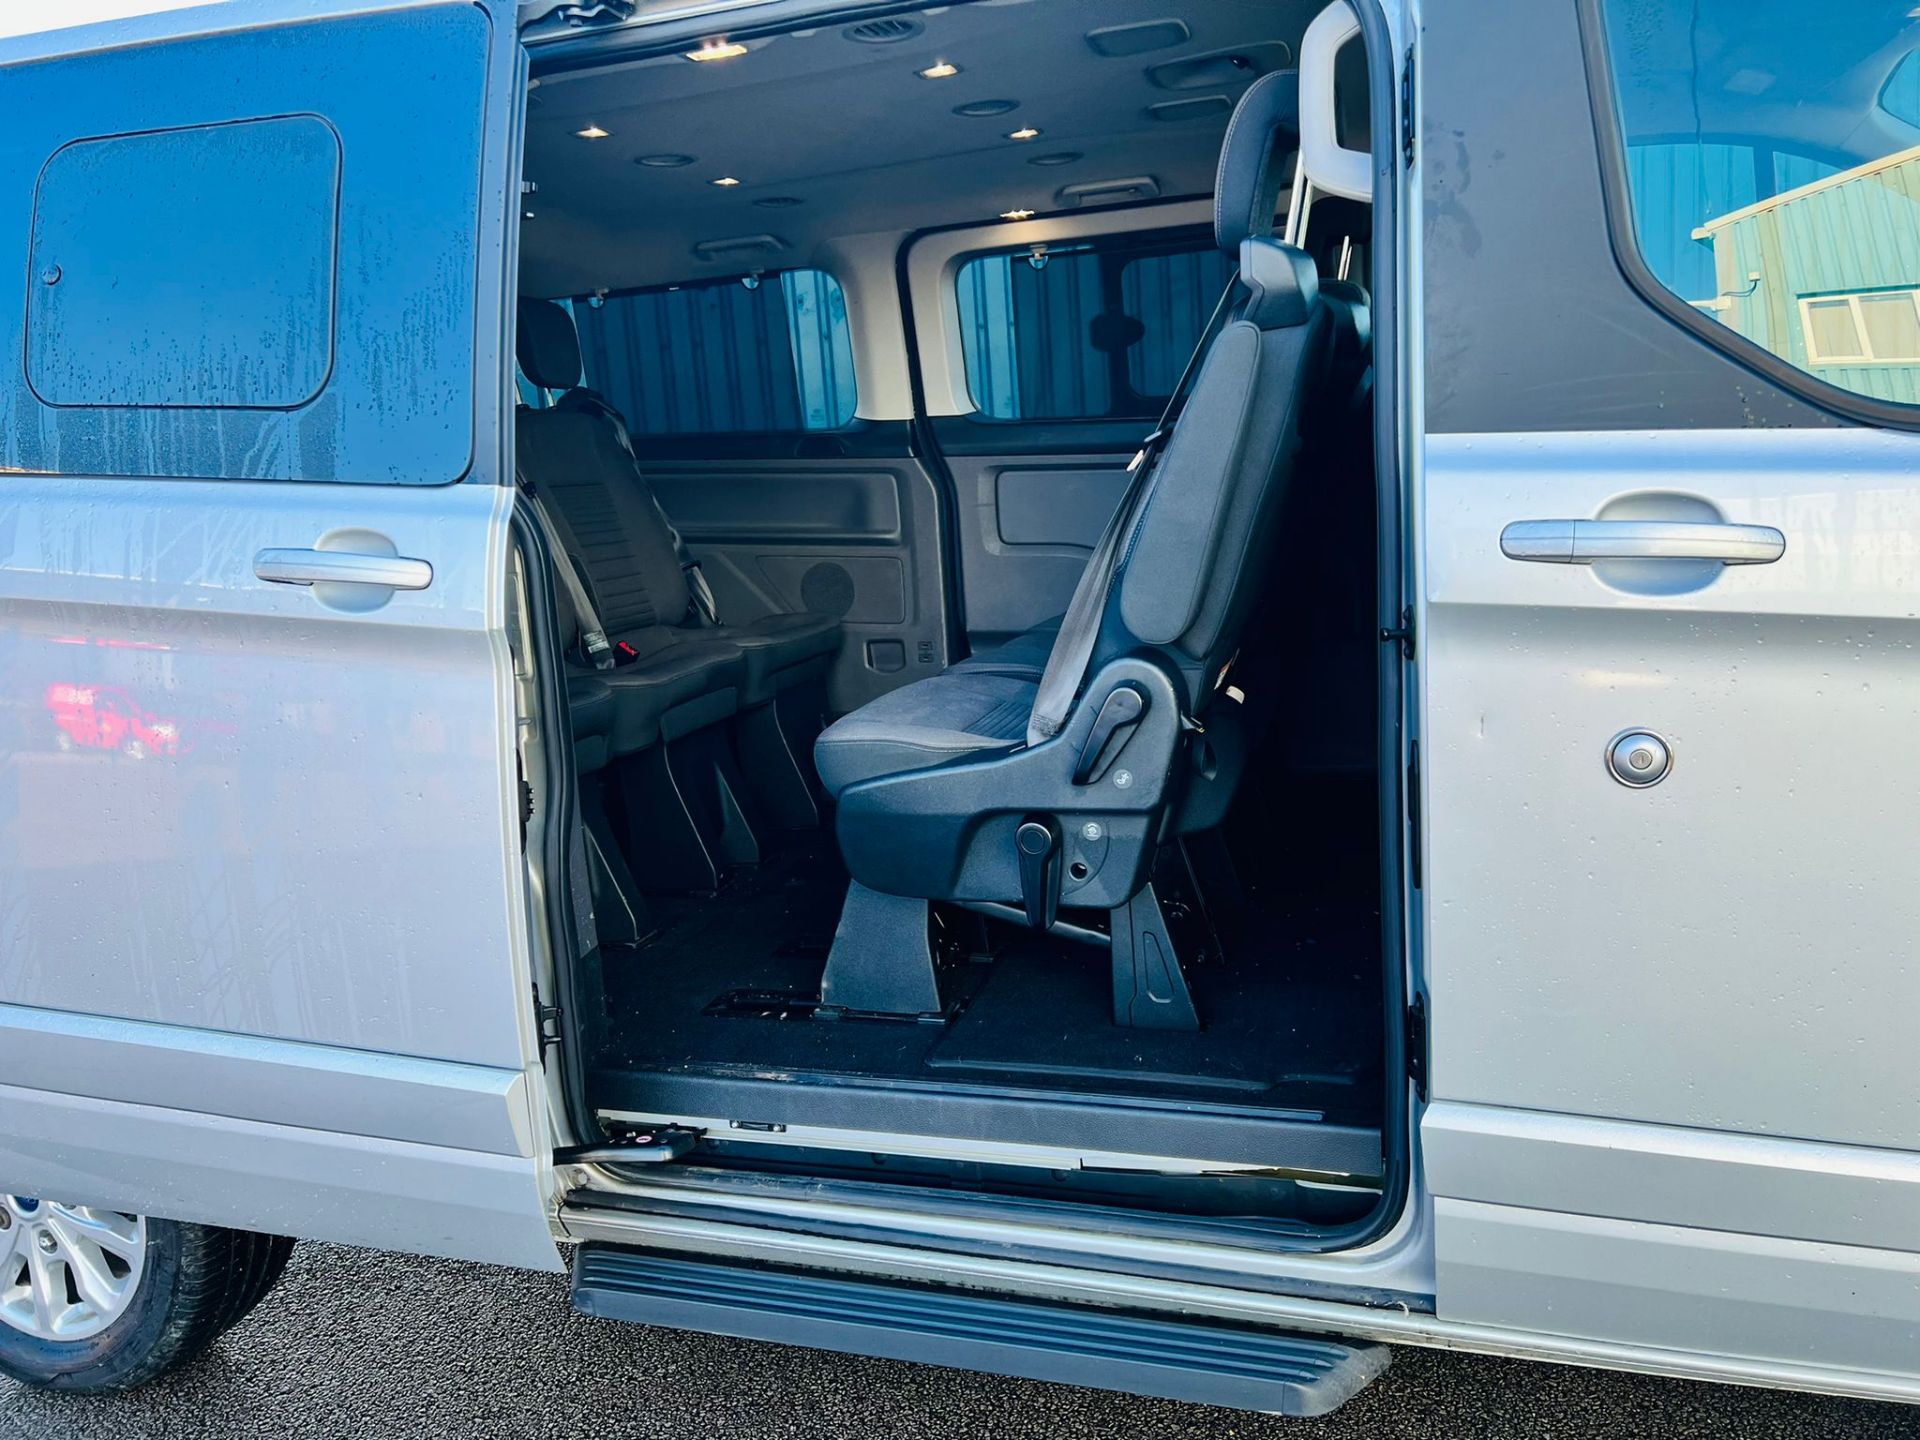 (Reserve Met) Ford Transit Custom 310 130 2.0 Tdci Titanium 9 Seater MiniBus 2019 Model - Air Con - - Image 20 of 36